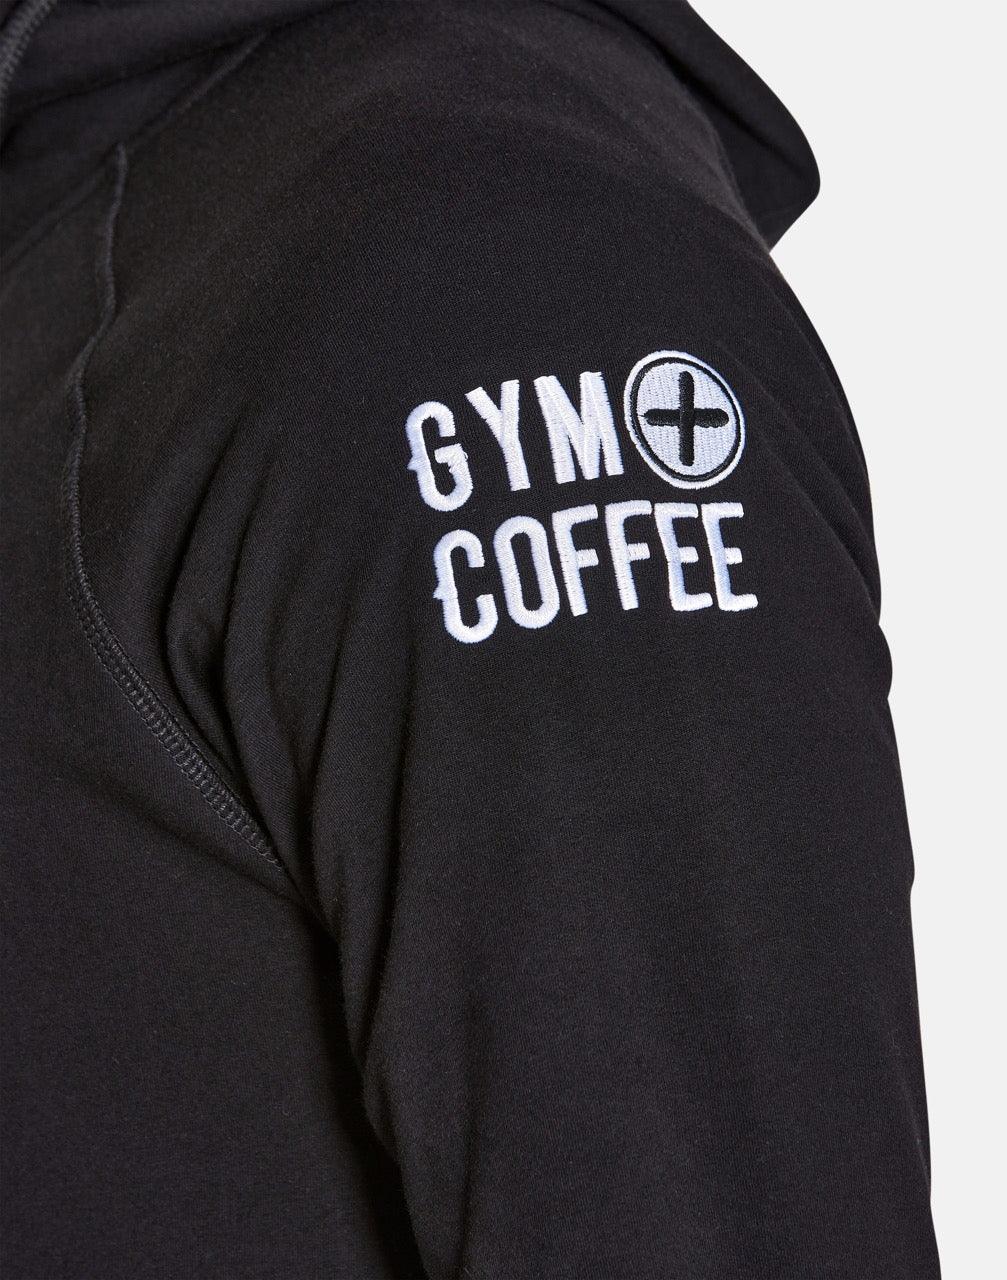 Men's Jet Black Hoodie - Hoodies - Gym+Coffee IE